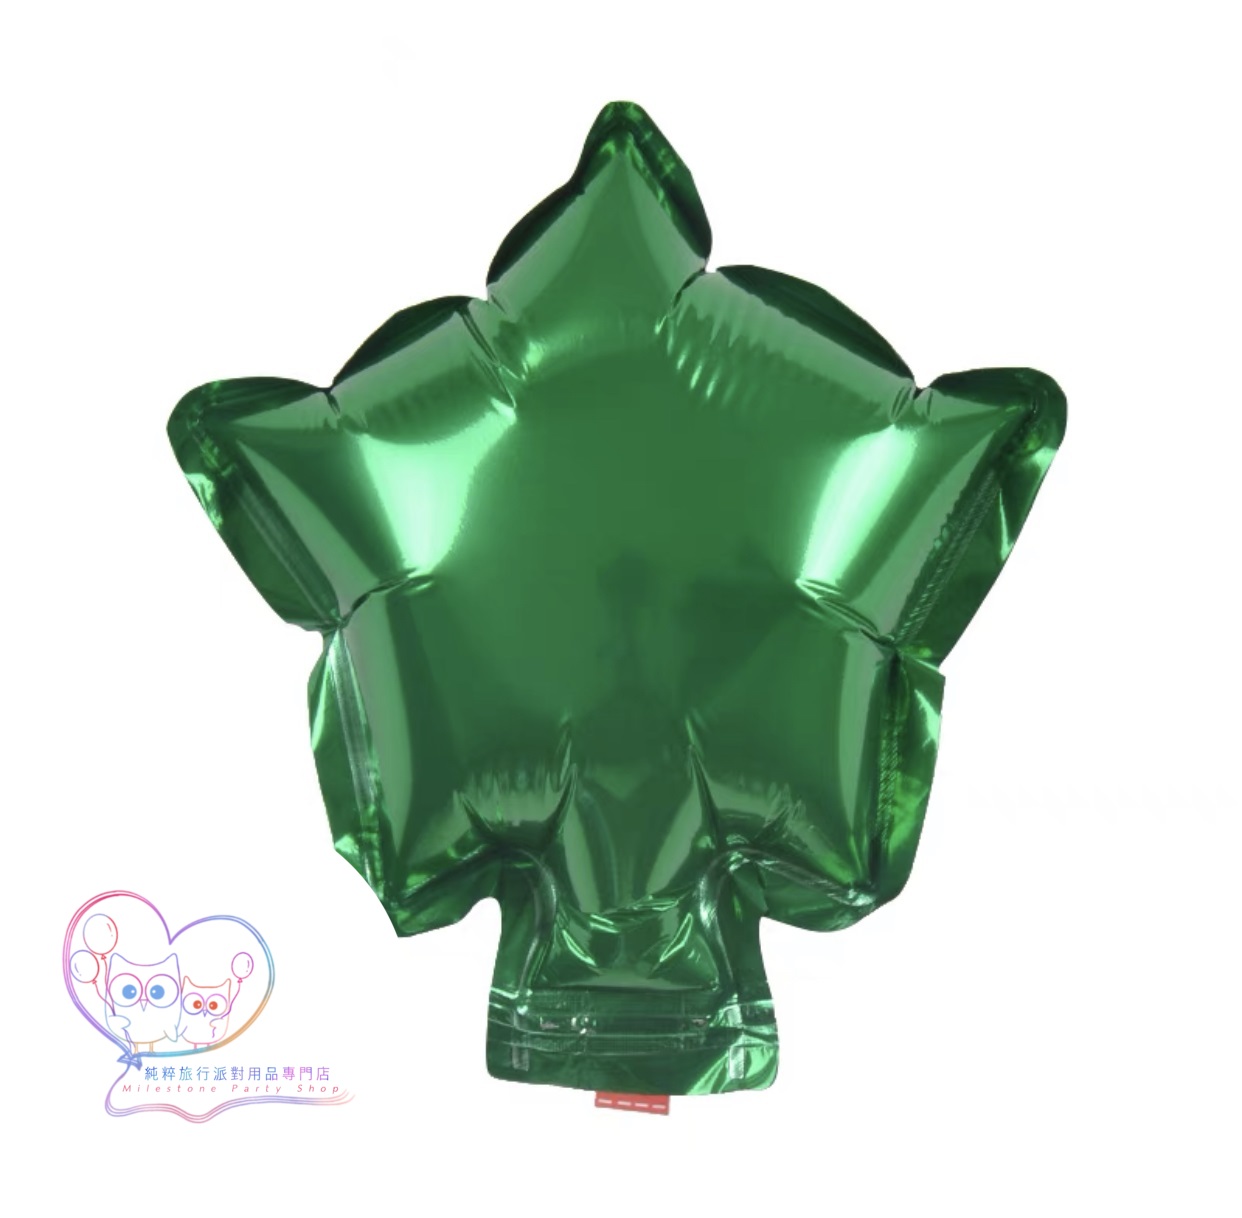 5吋星星鋁膜氣球 (綠色) 5S8